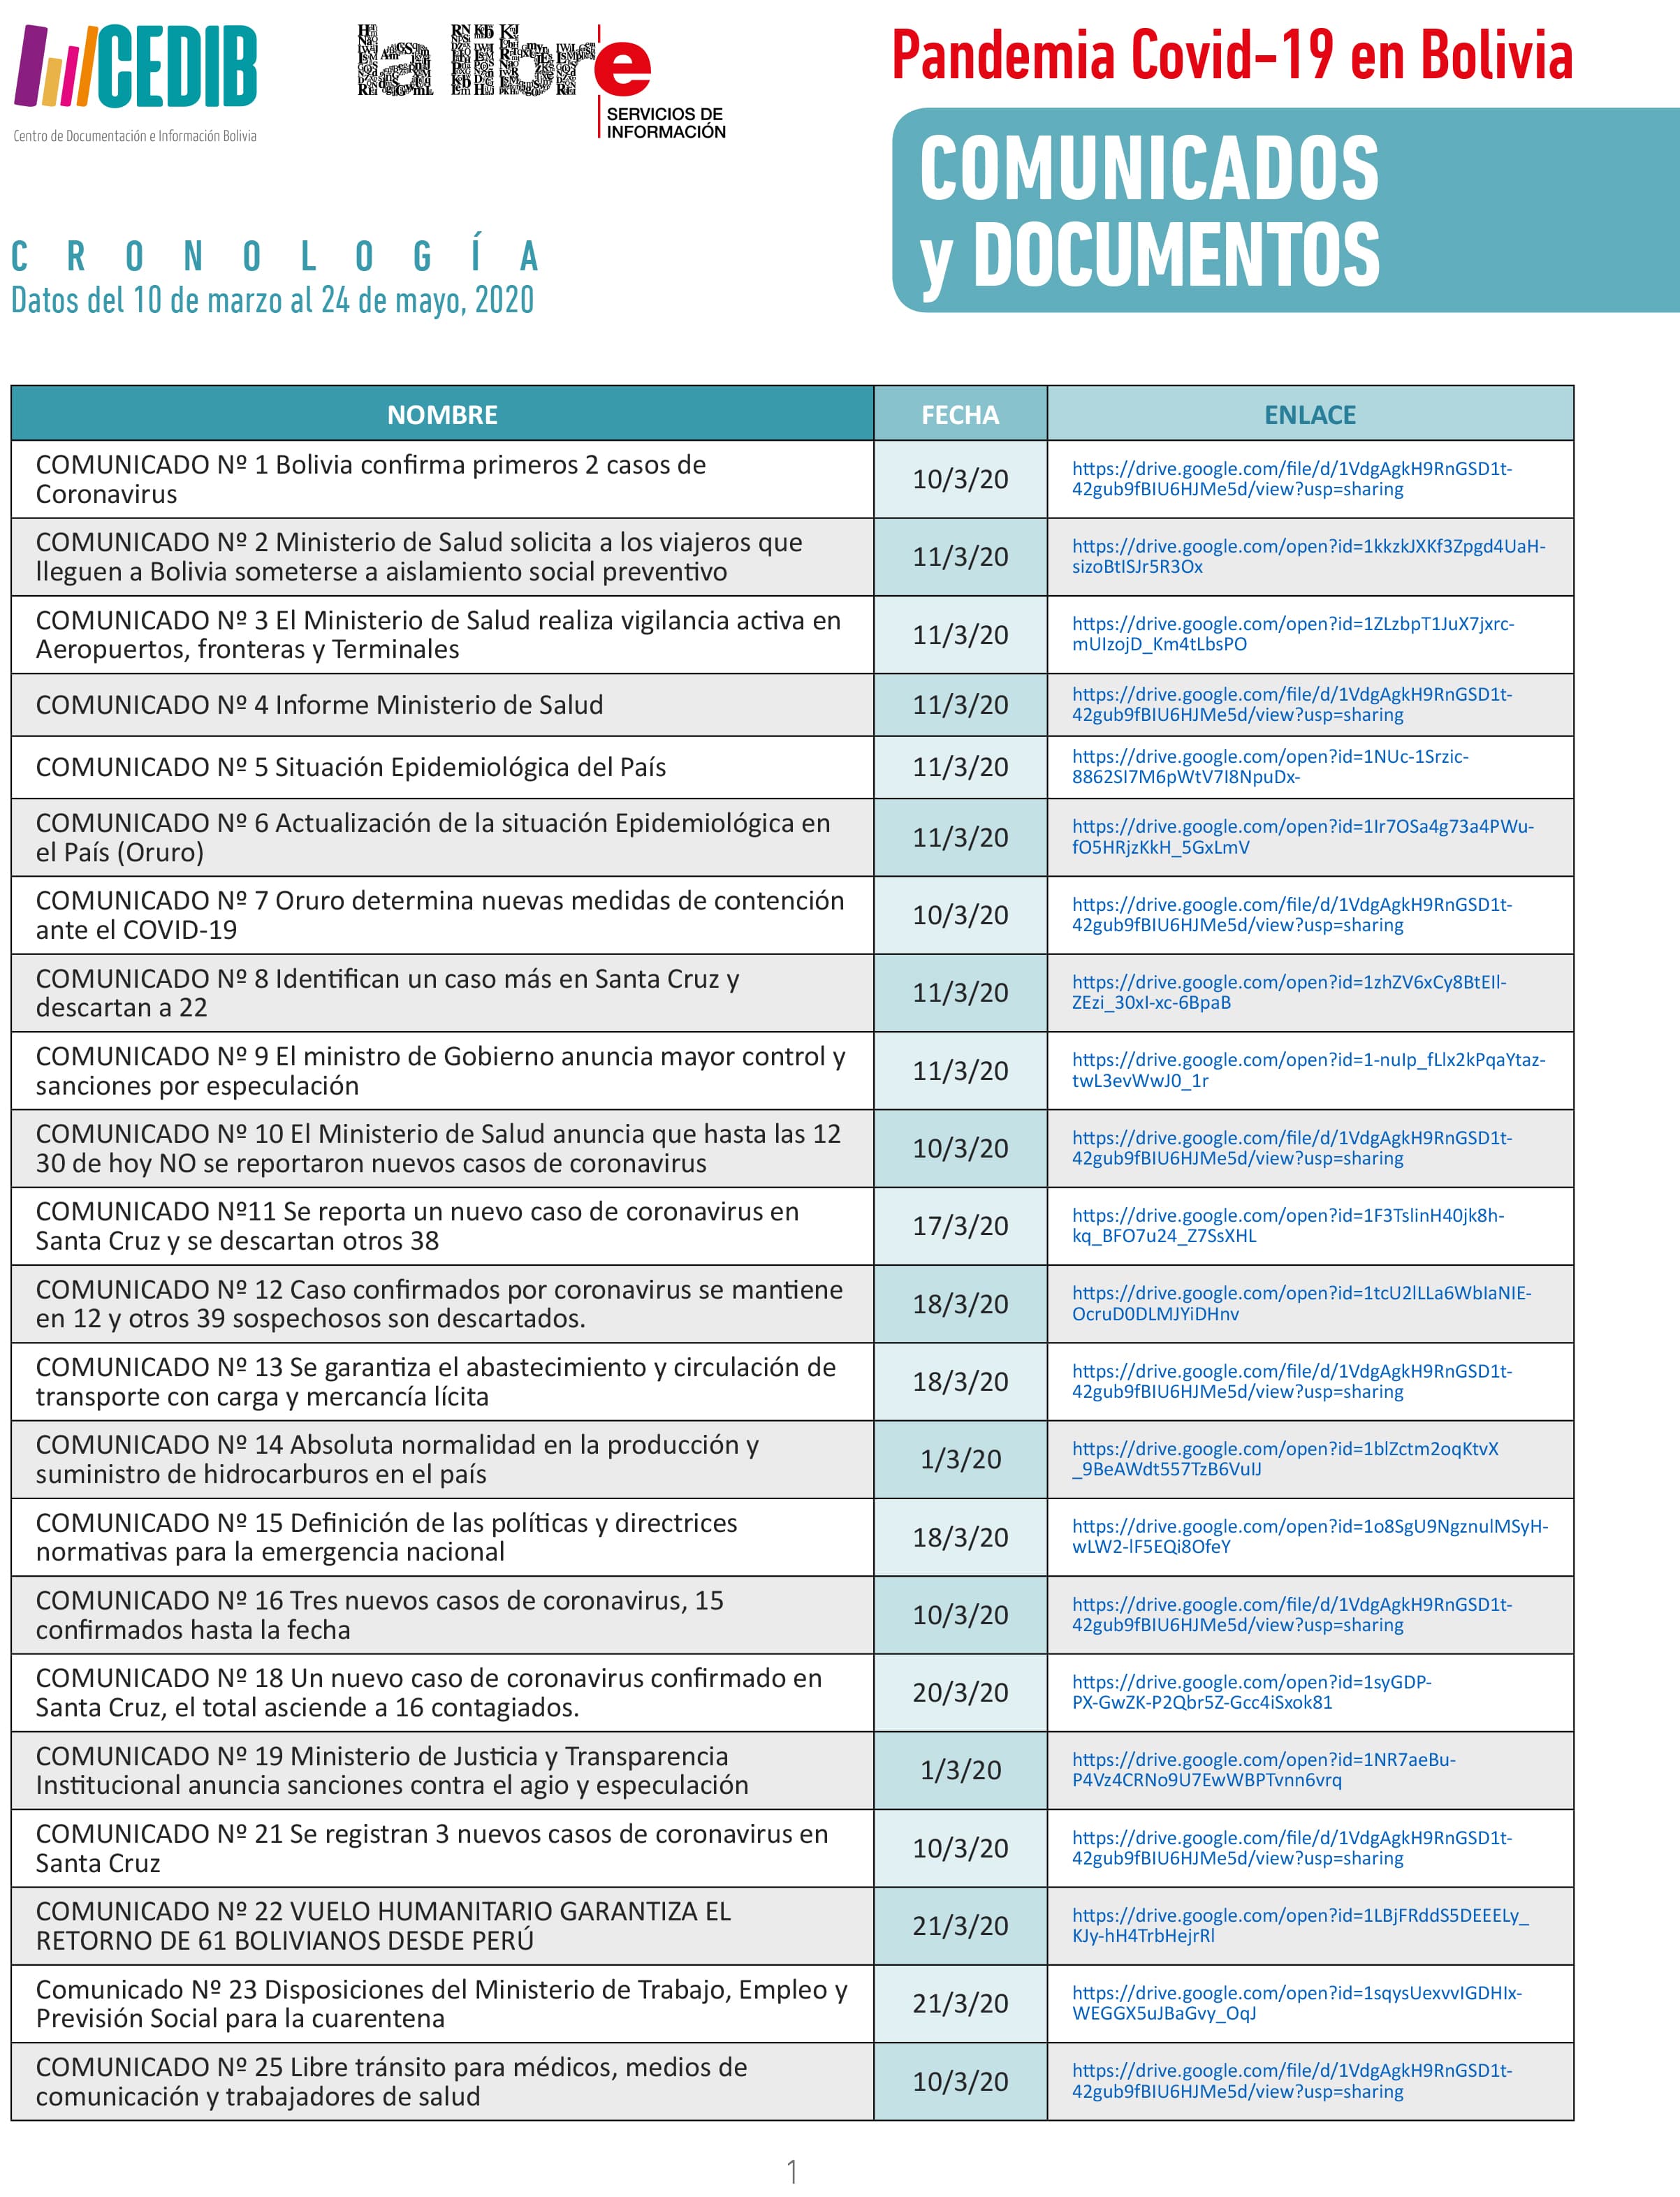 Cronología de Comunicados oficiales COVID19 en Bolivia (1 al 94)